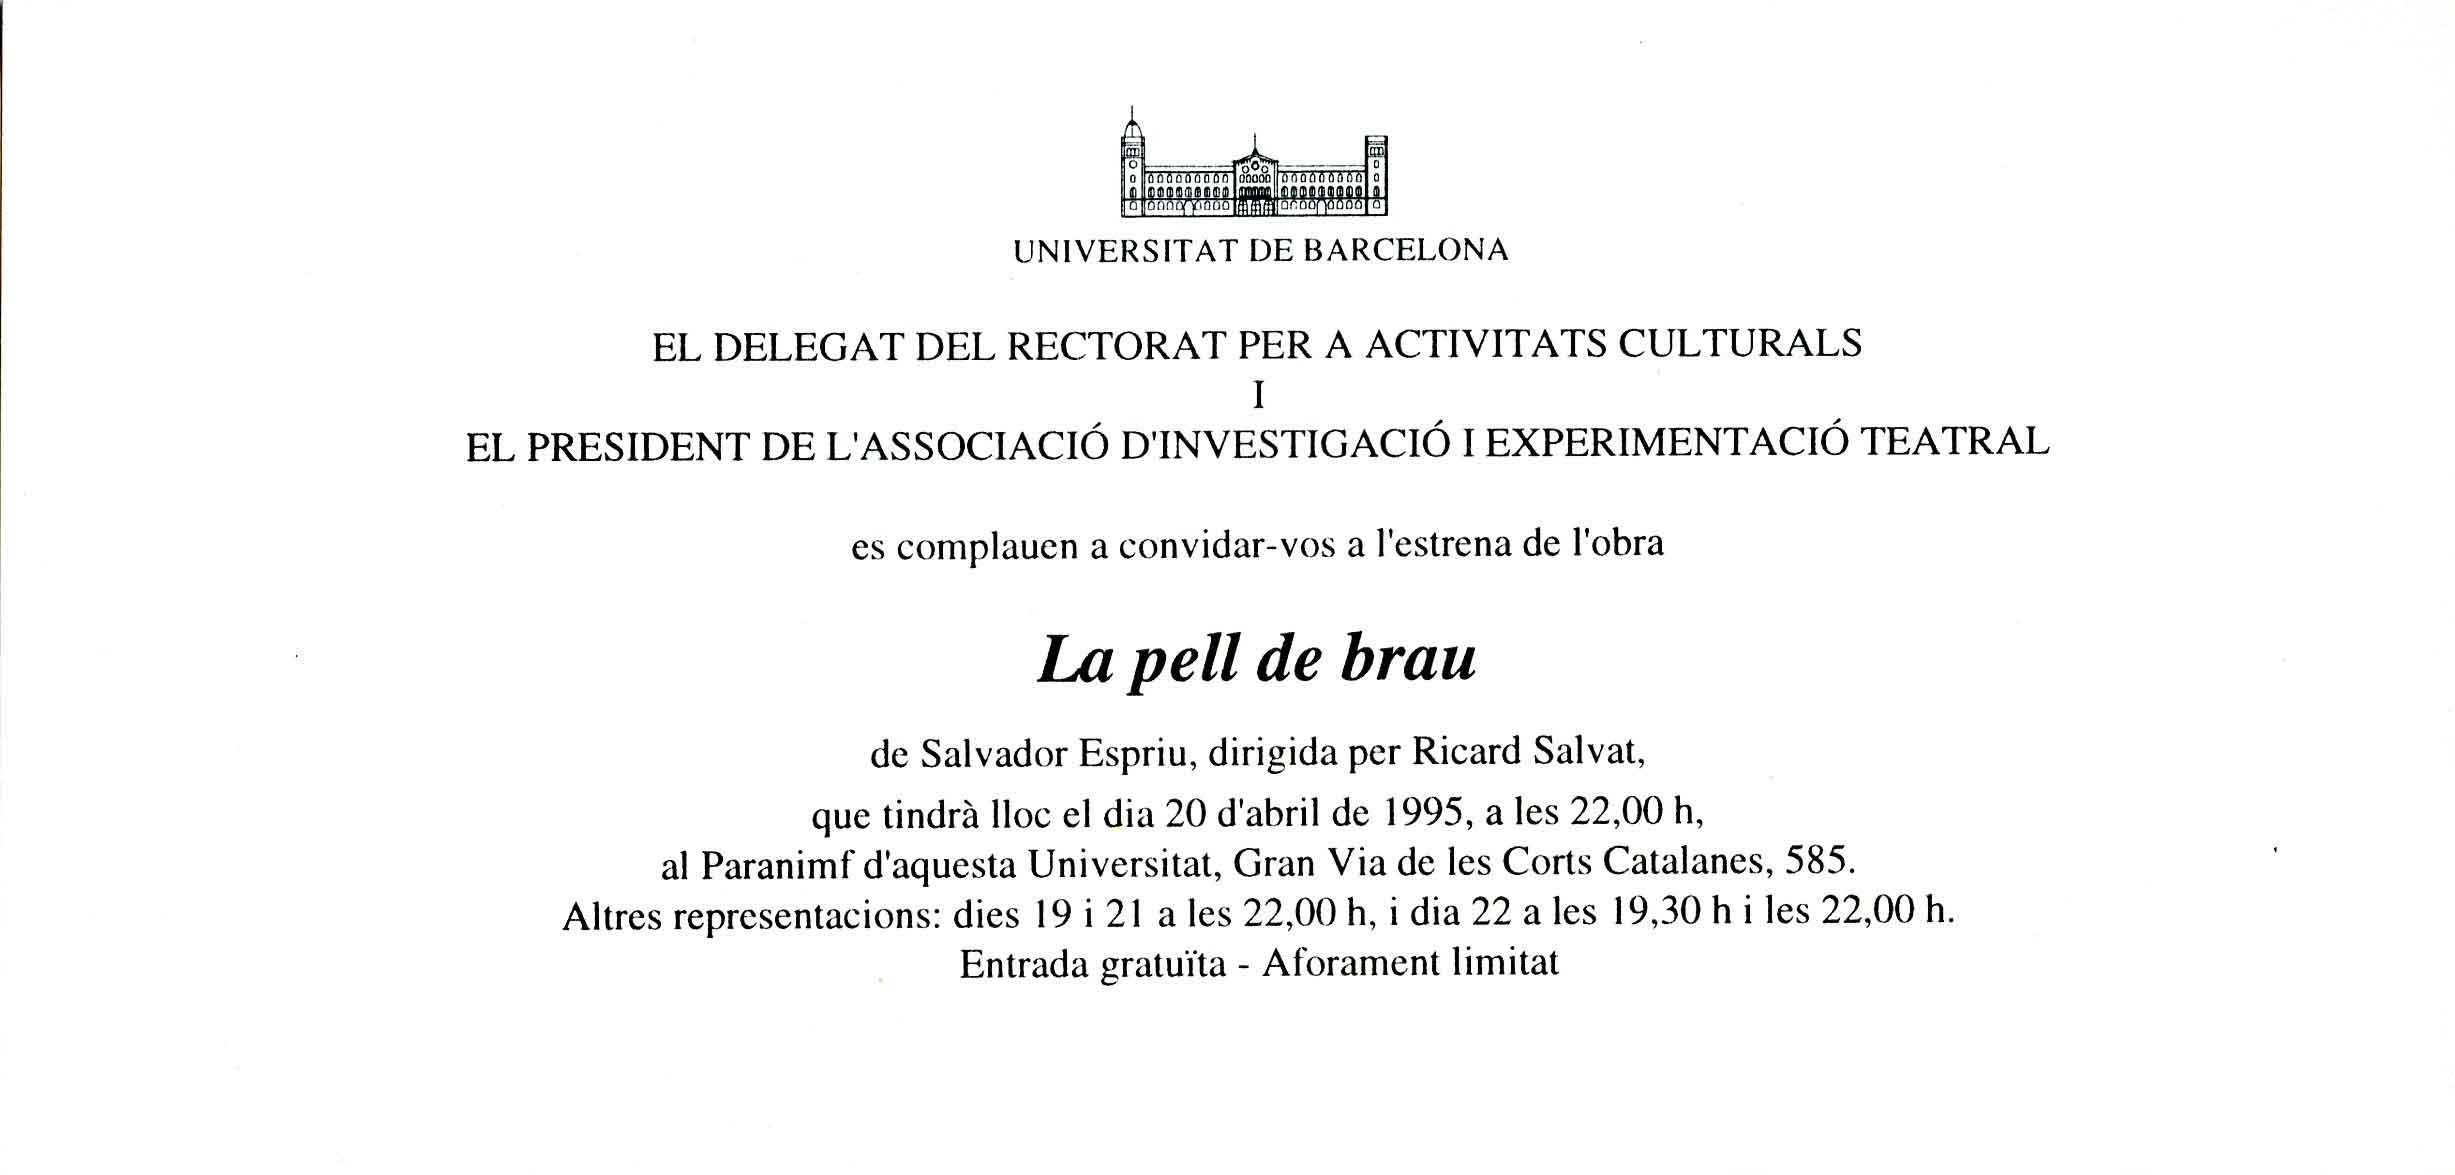 Invitació de l'estrena a la Universitat de Barcelona 1995